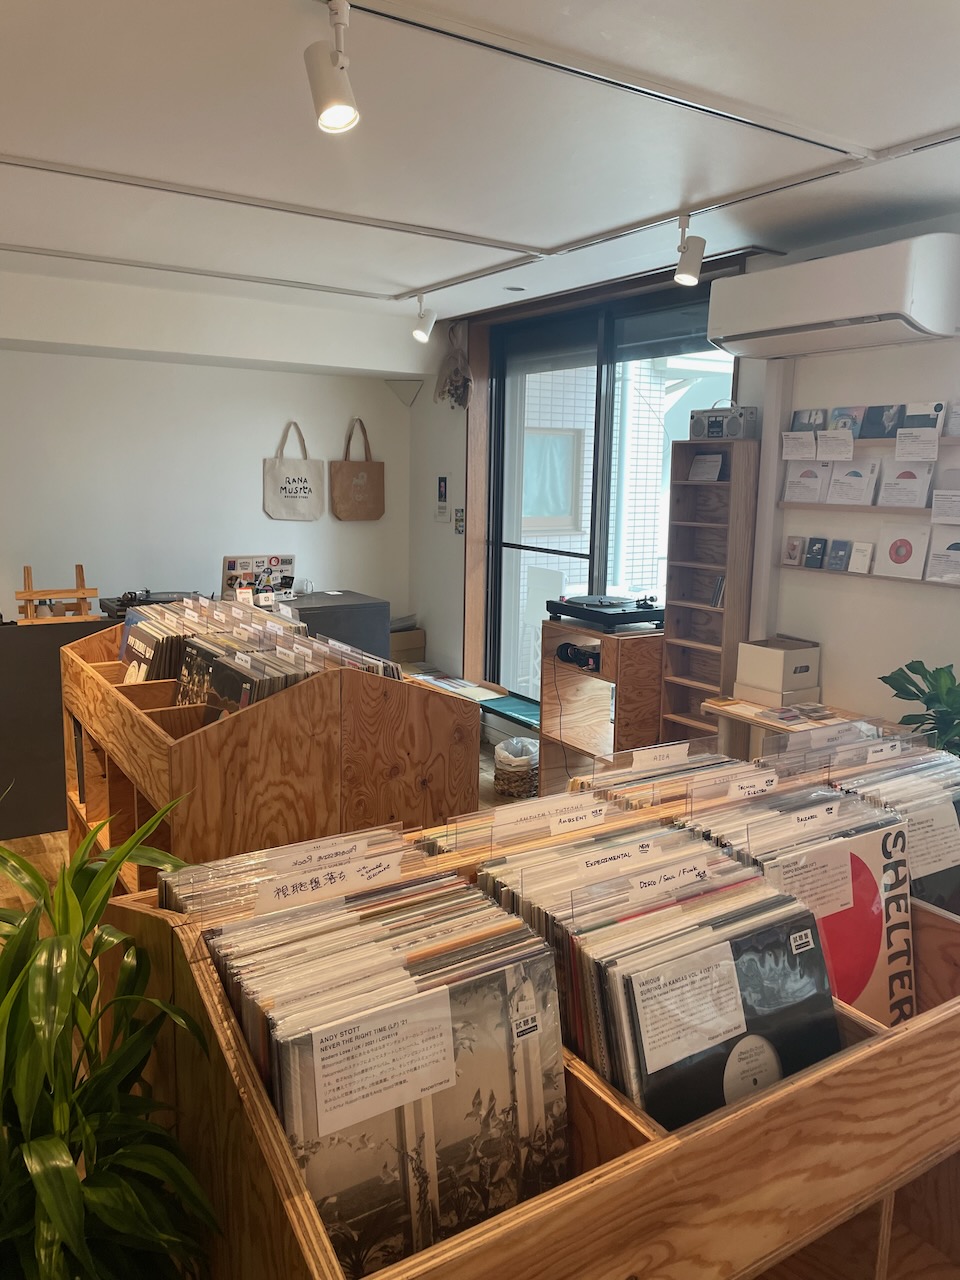 Rana-Musica Record Store - 2 of 4